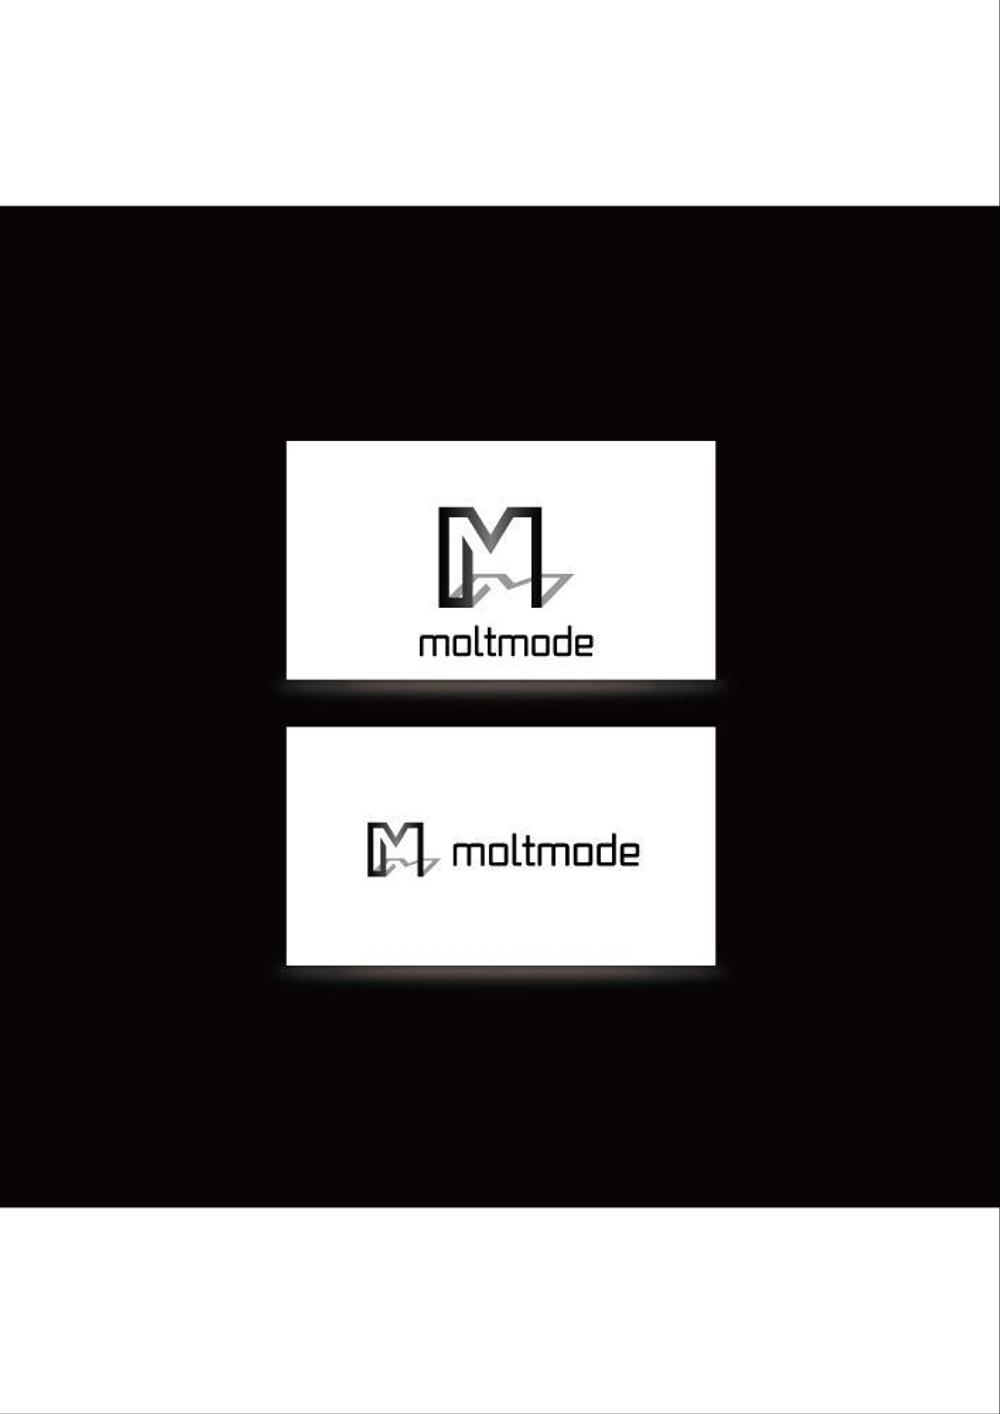 ネイル、マツエクサロン『moltmode』のロゴ